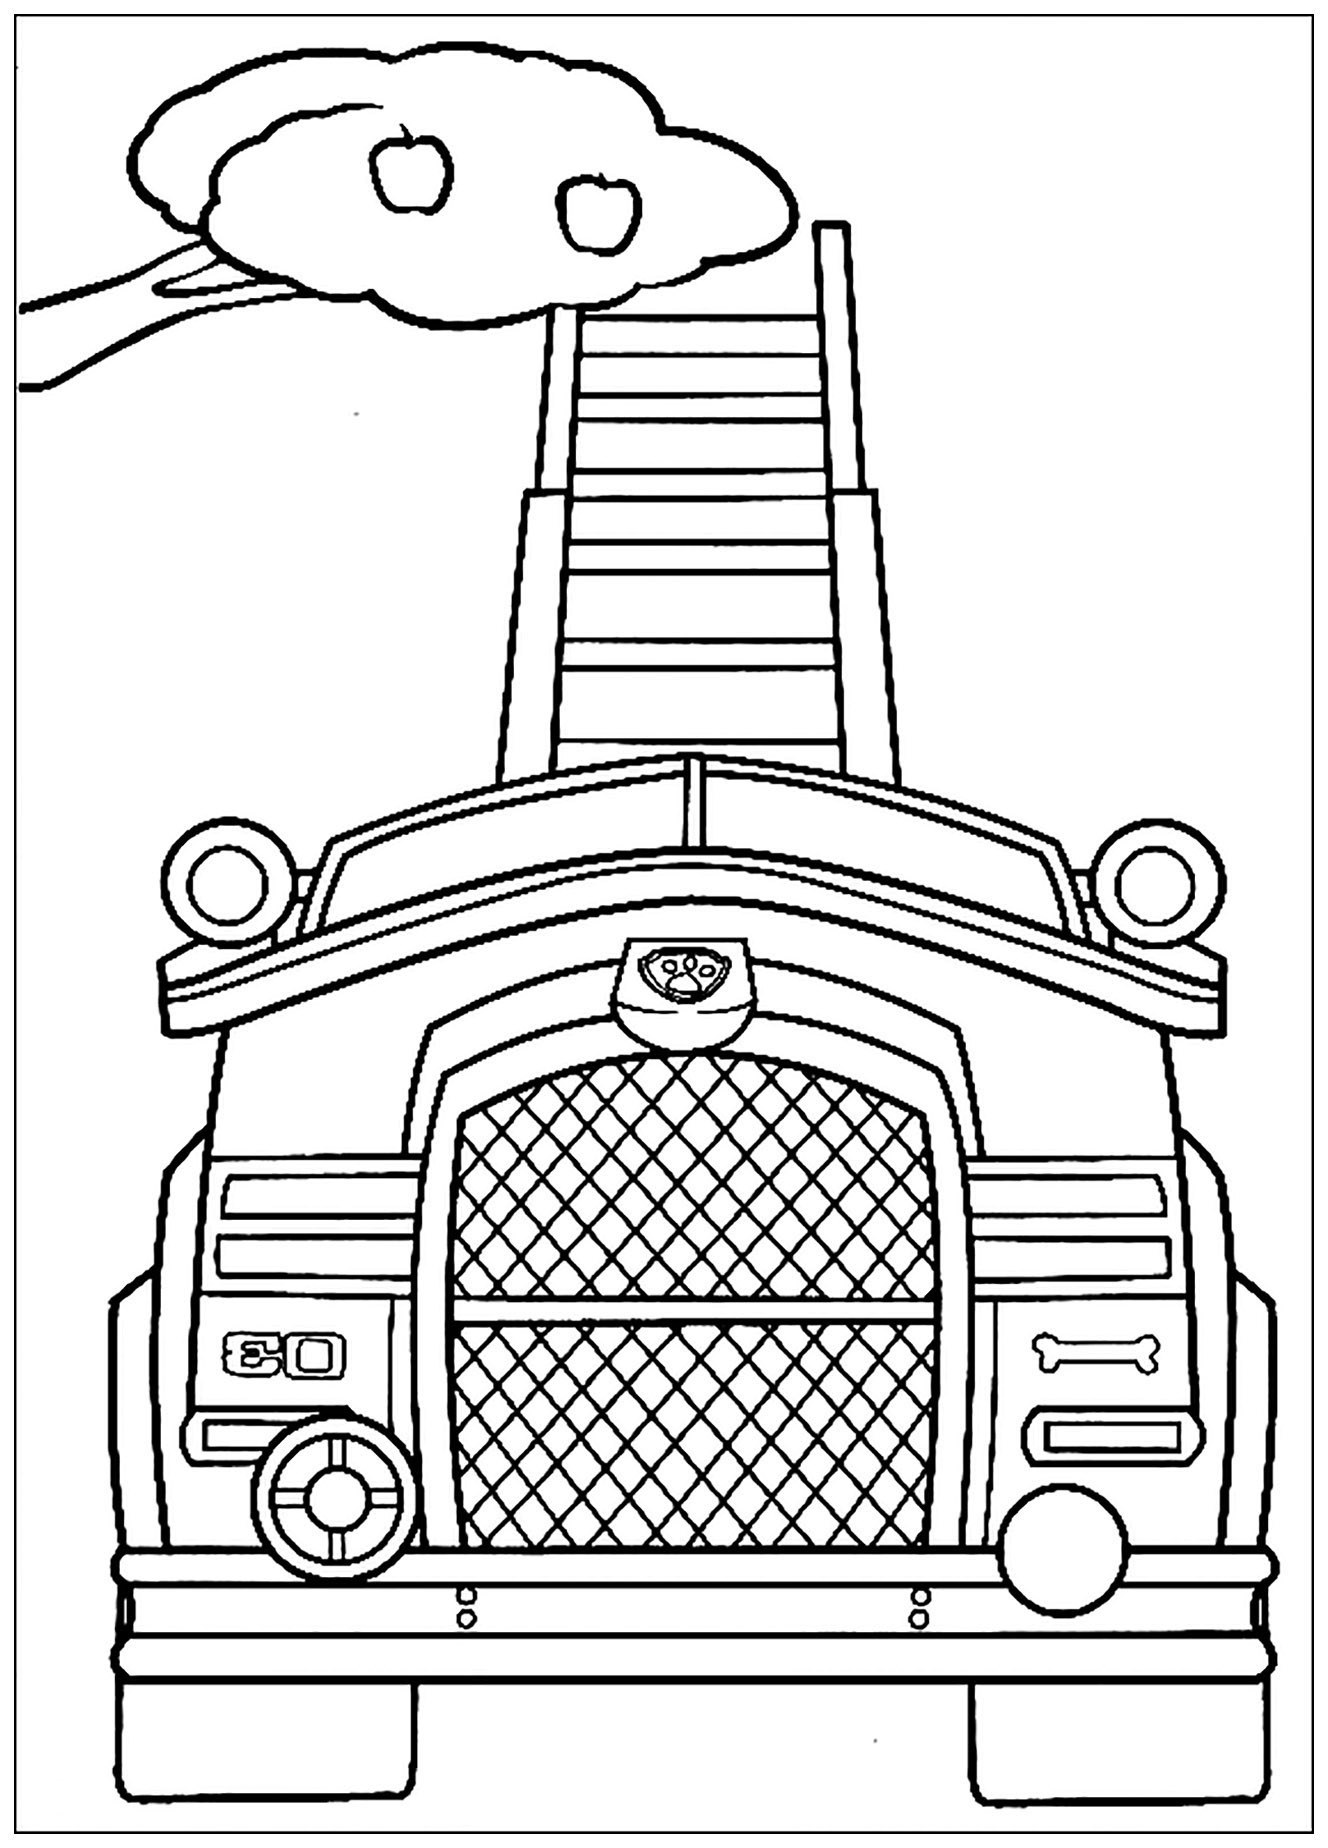 Dibujo de PAW Patrol, Patrulla de cachorros para colorear, fácil para los niños: vehículo recolector